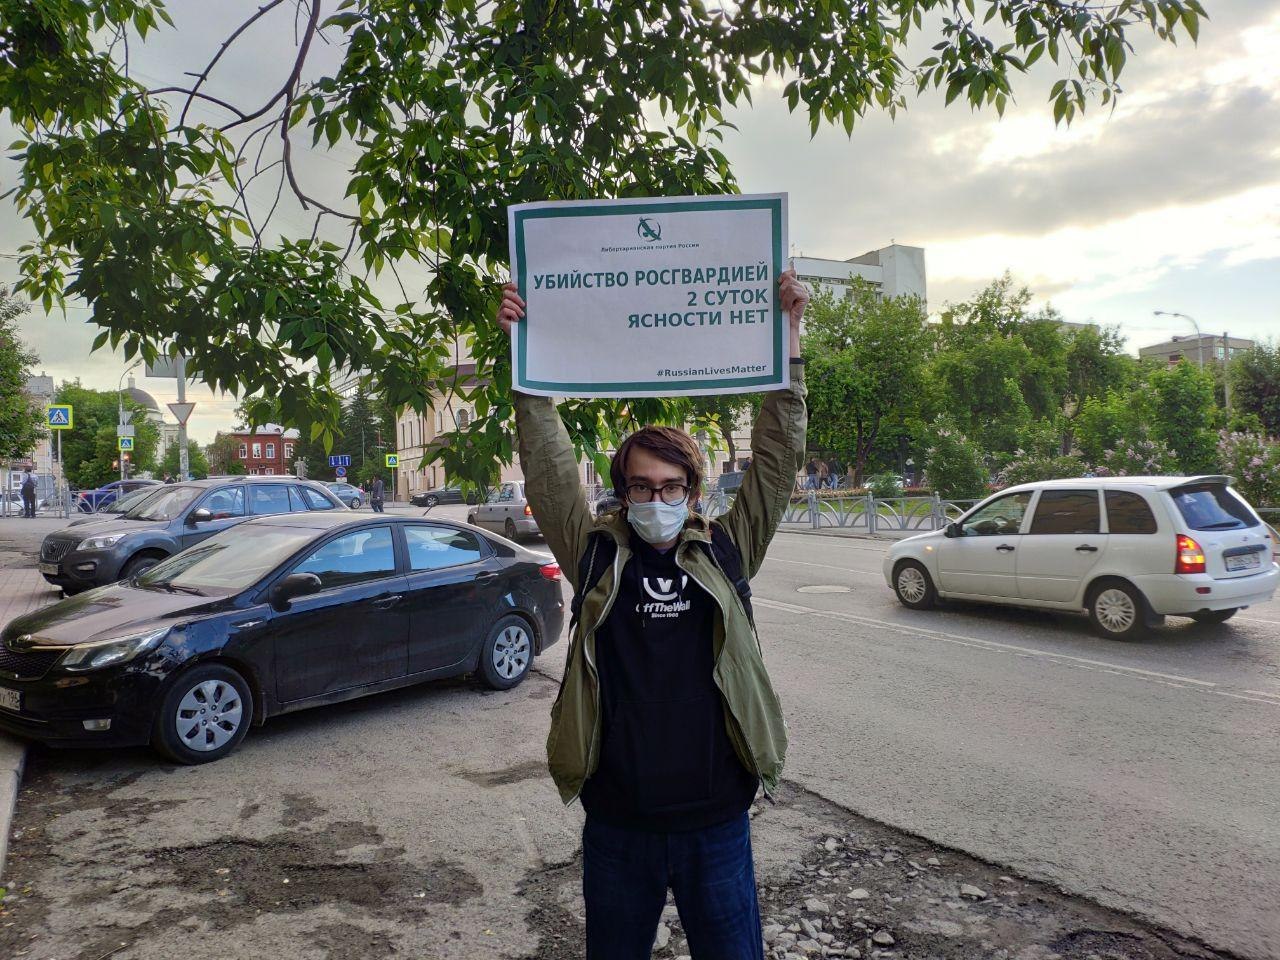 Активист ЛПР с плакатом "Убийство Росгвардией. Двое суток. Ясности нет"